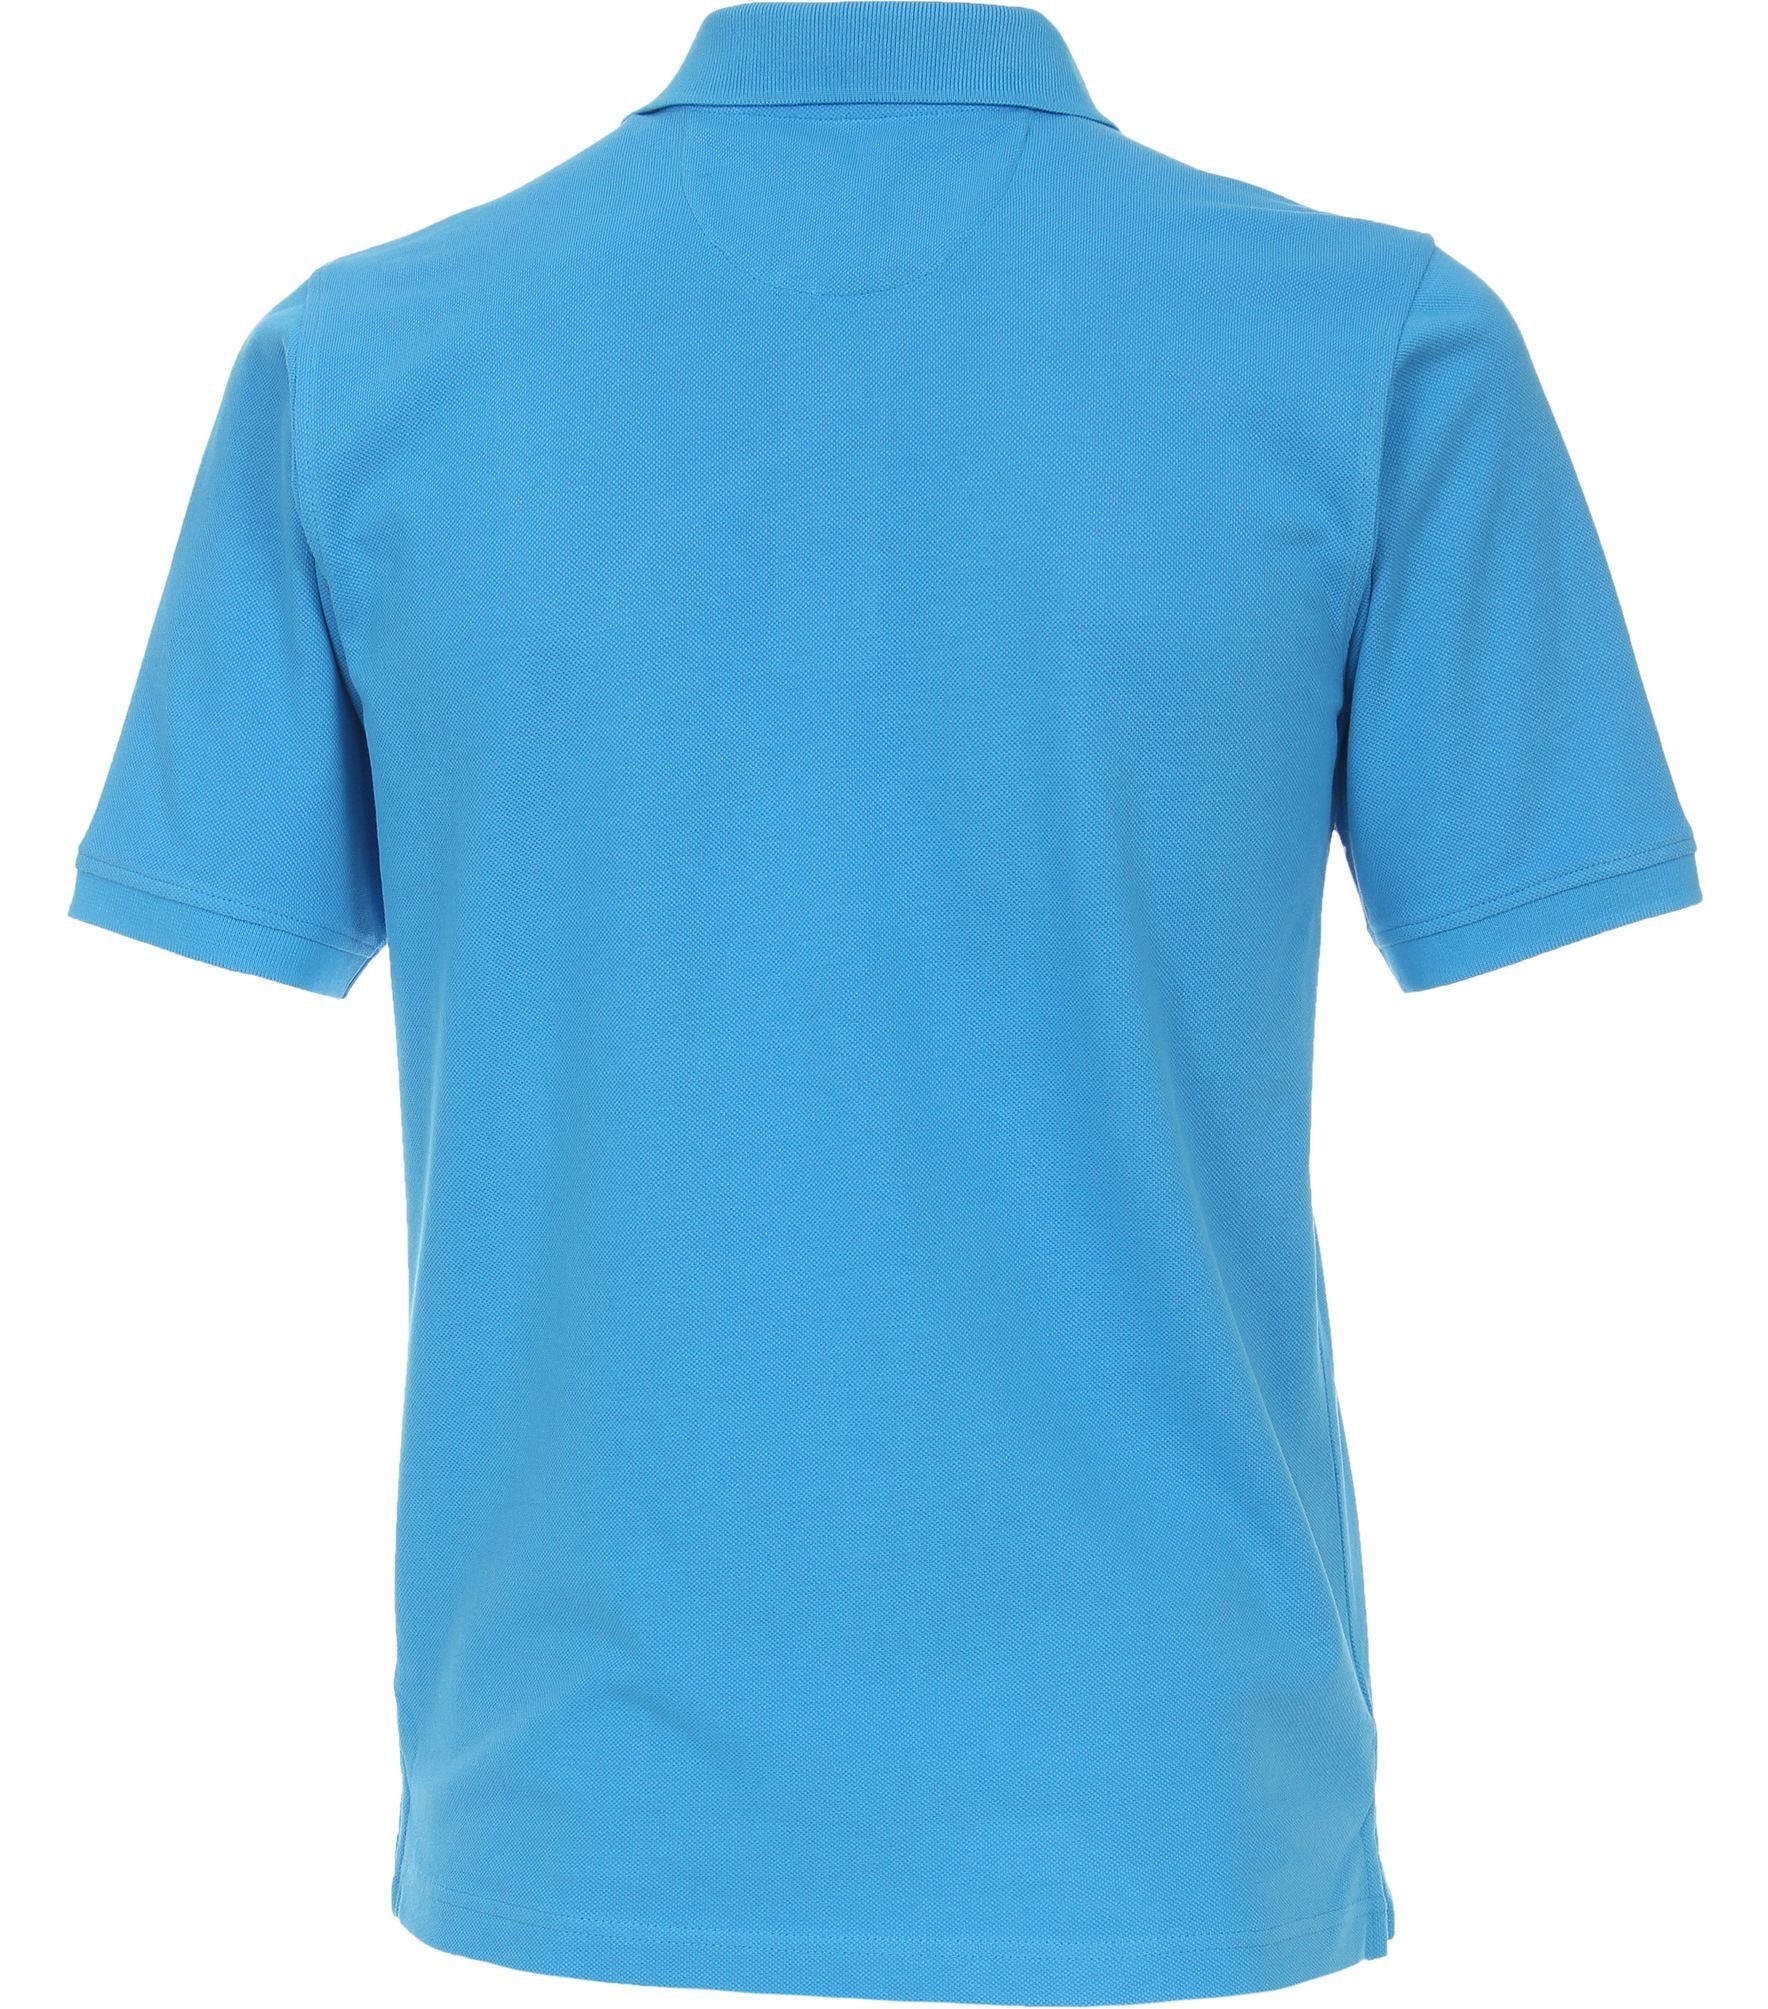 Polo-Shirt Redmond Blau(13) Poloshirt Piqué